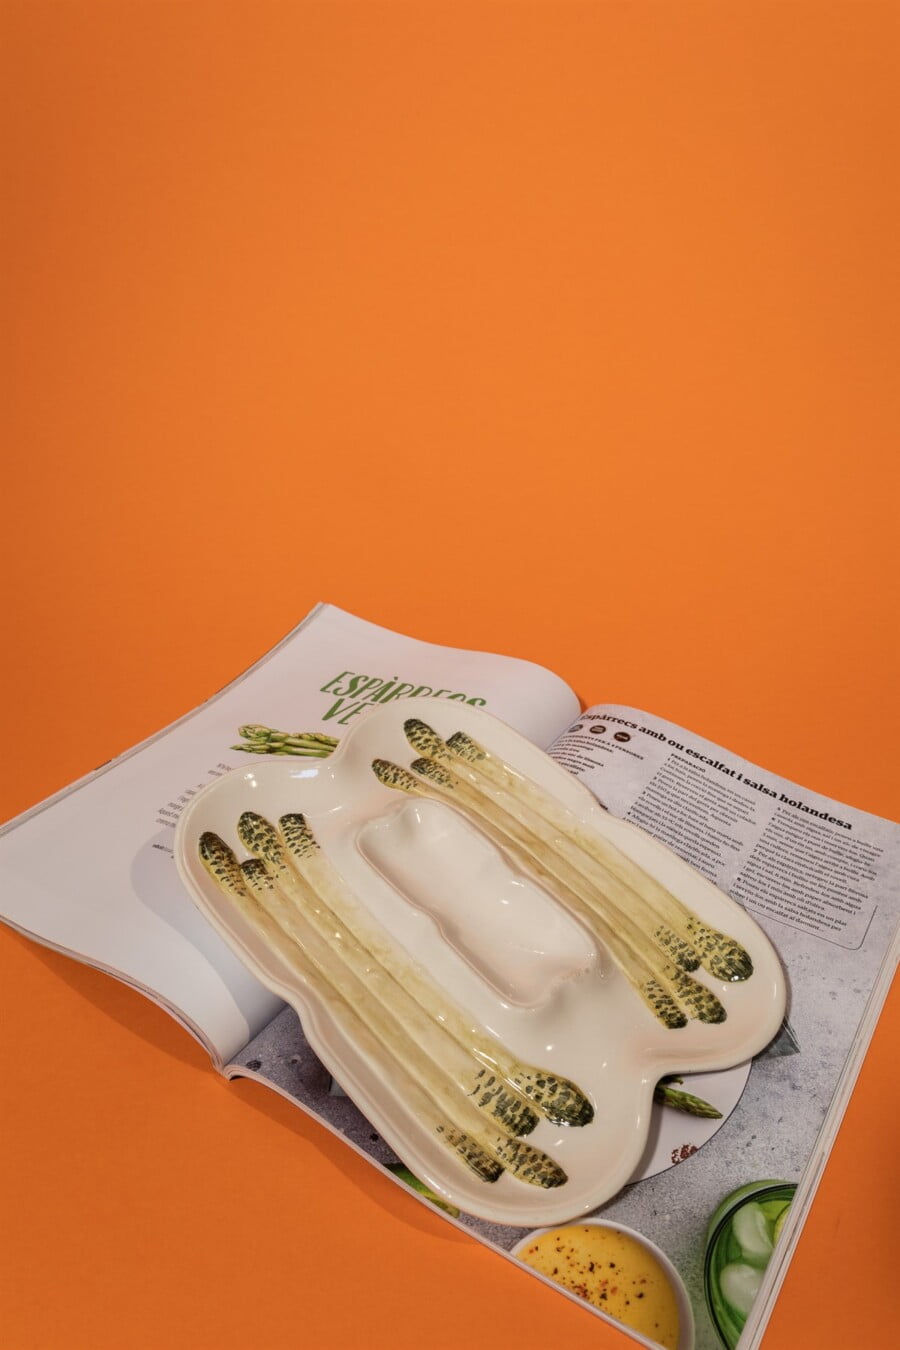 Italian asparagus porcelain plater